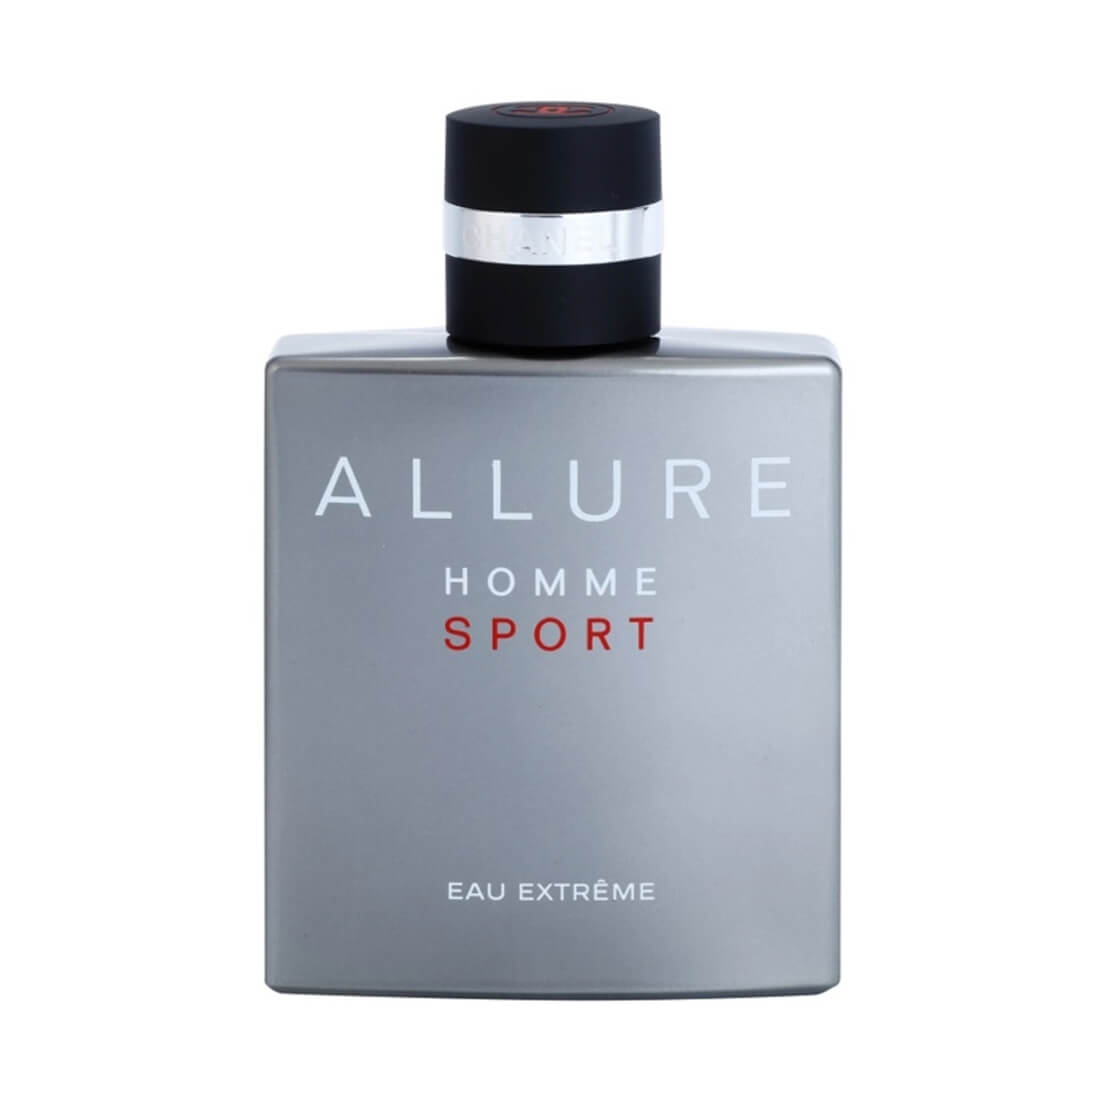 Allure Homme Sport Eau Extreme Cologne Set